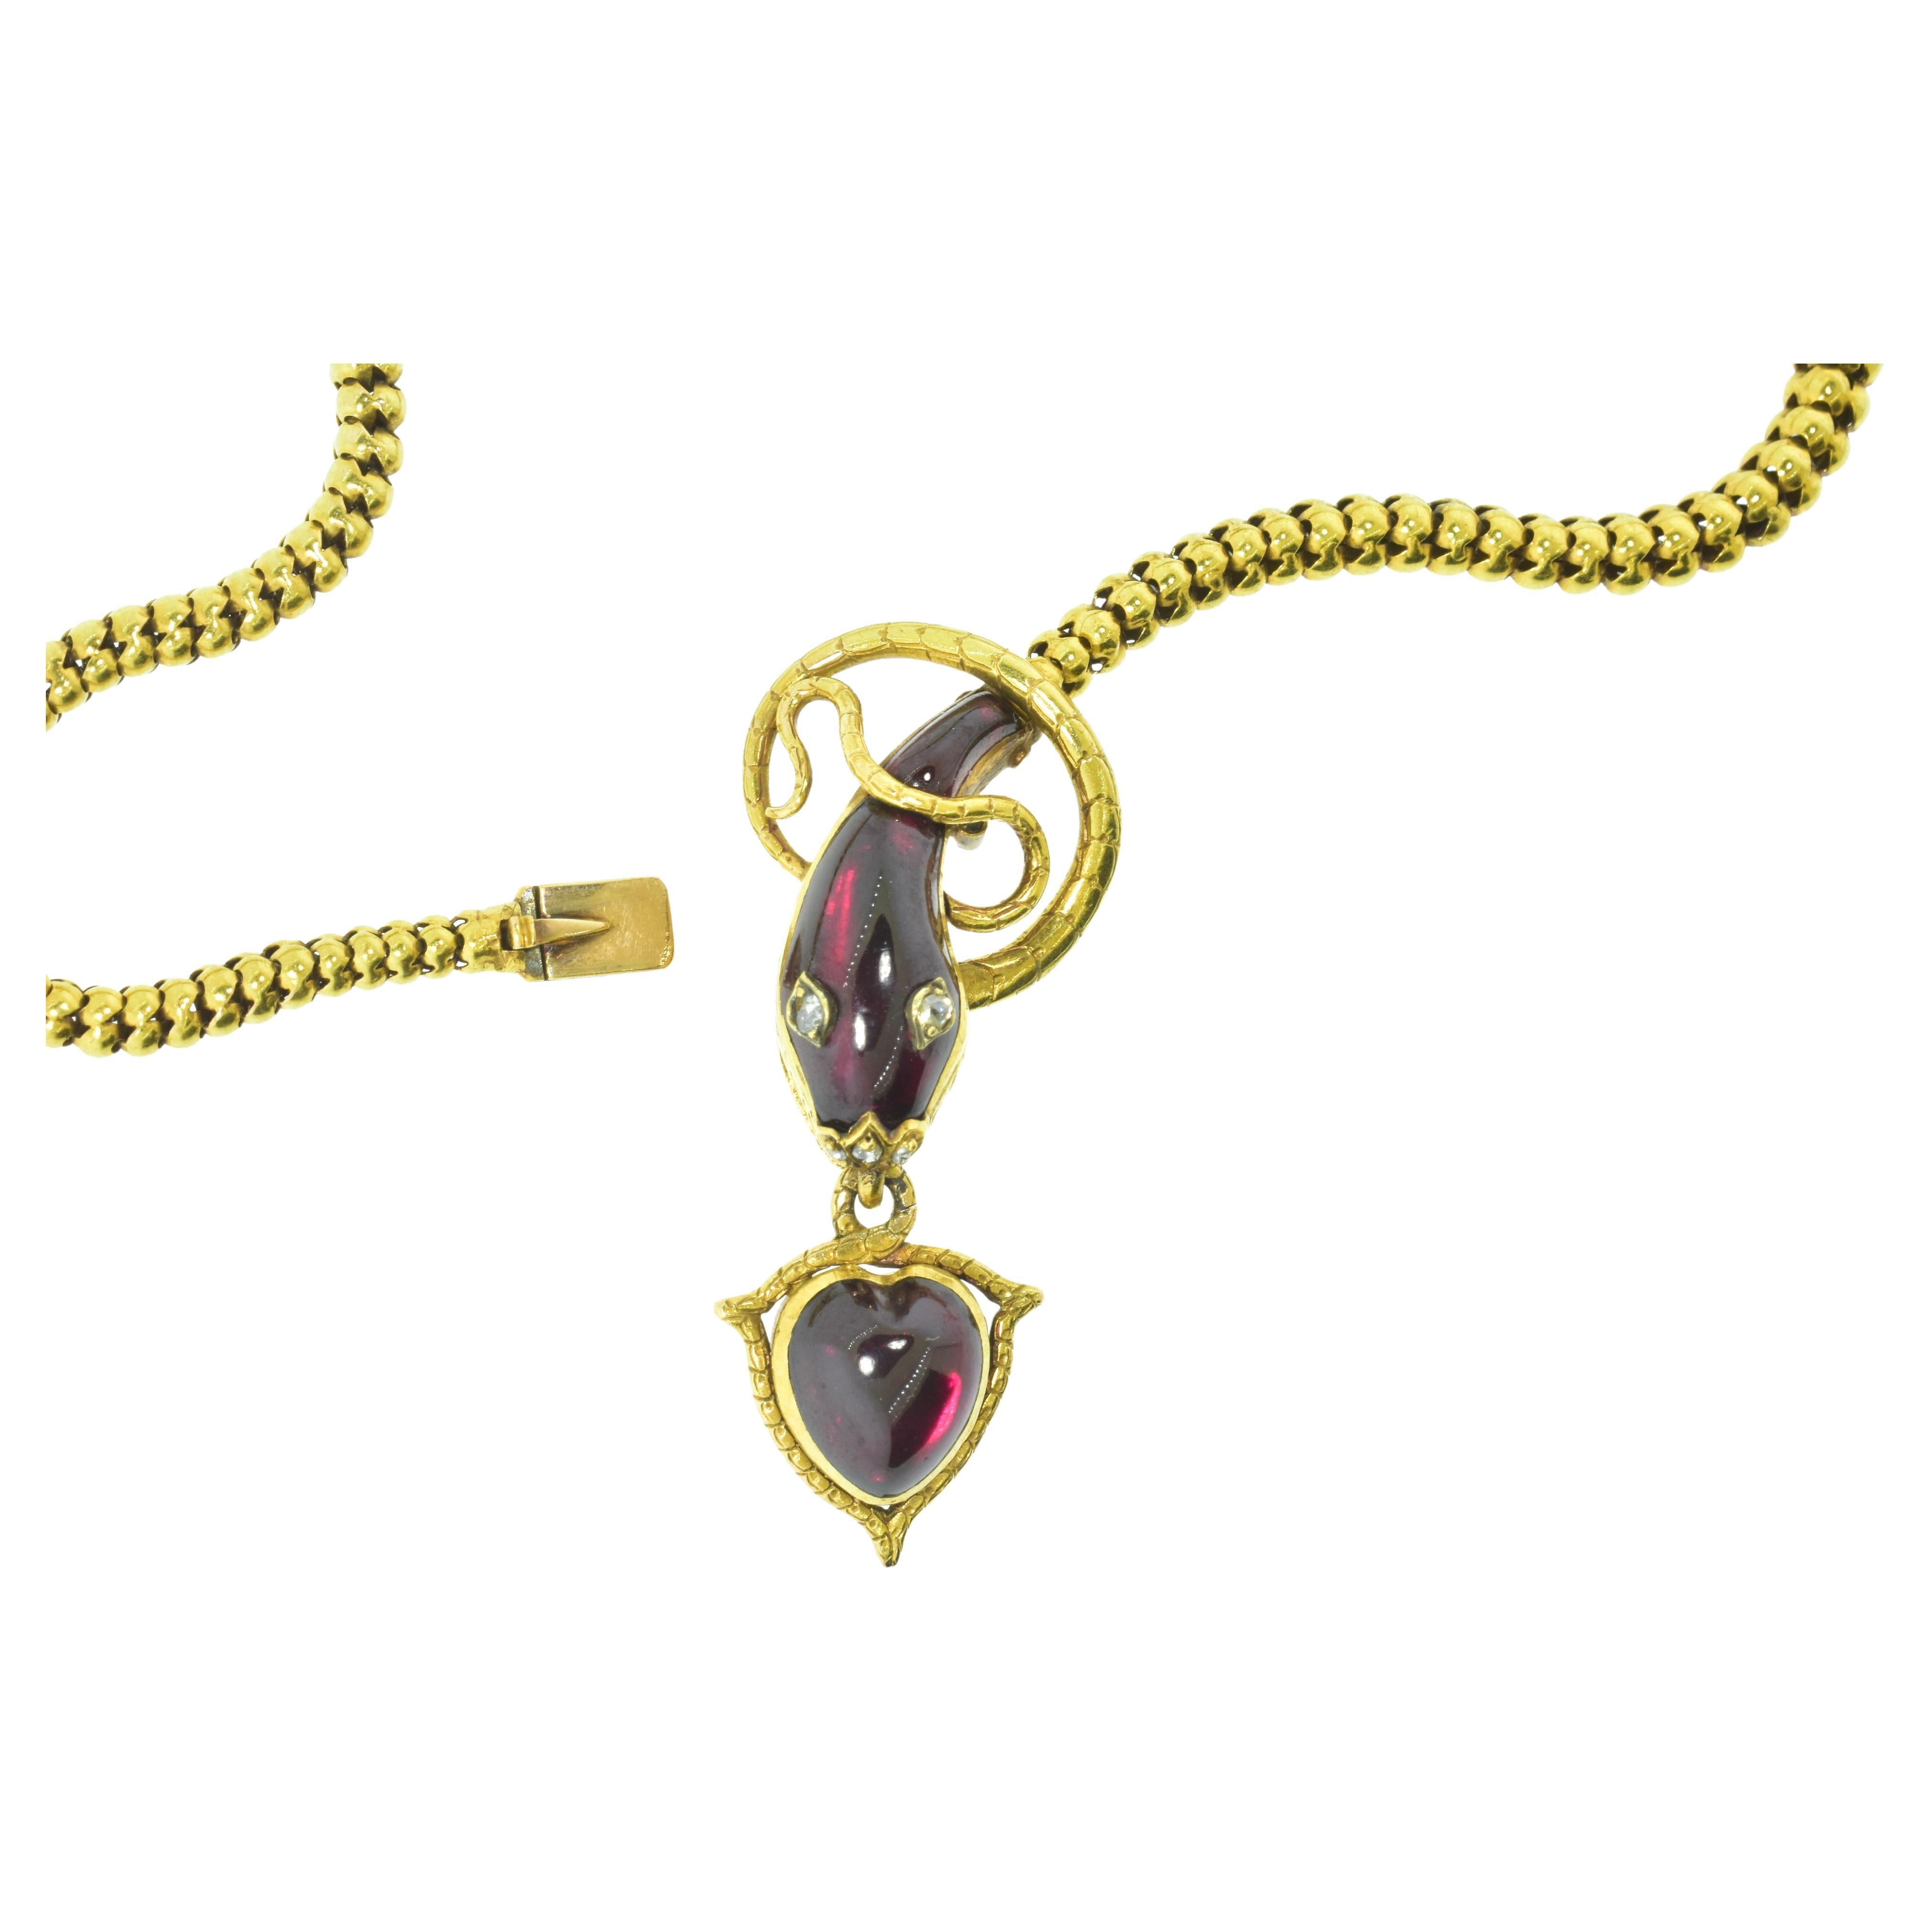 Antike Halskette aus 18-karätigem Gelbgold mit Schlangen- und Herzmotiv. Herz und Schlange sind mit roten Granaten im Fantasieschliff besetzt, die Augen und die Nase der Schlange sind mit Diamanten im Rosenschliff besetzt.  

Diese Halskette ist in